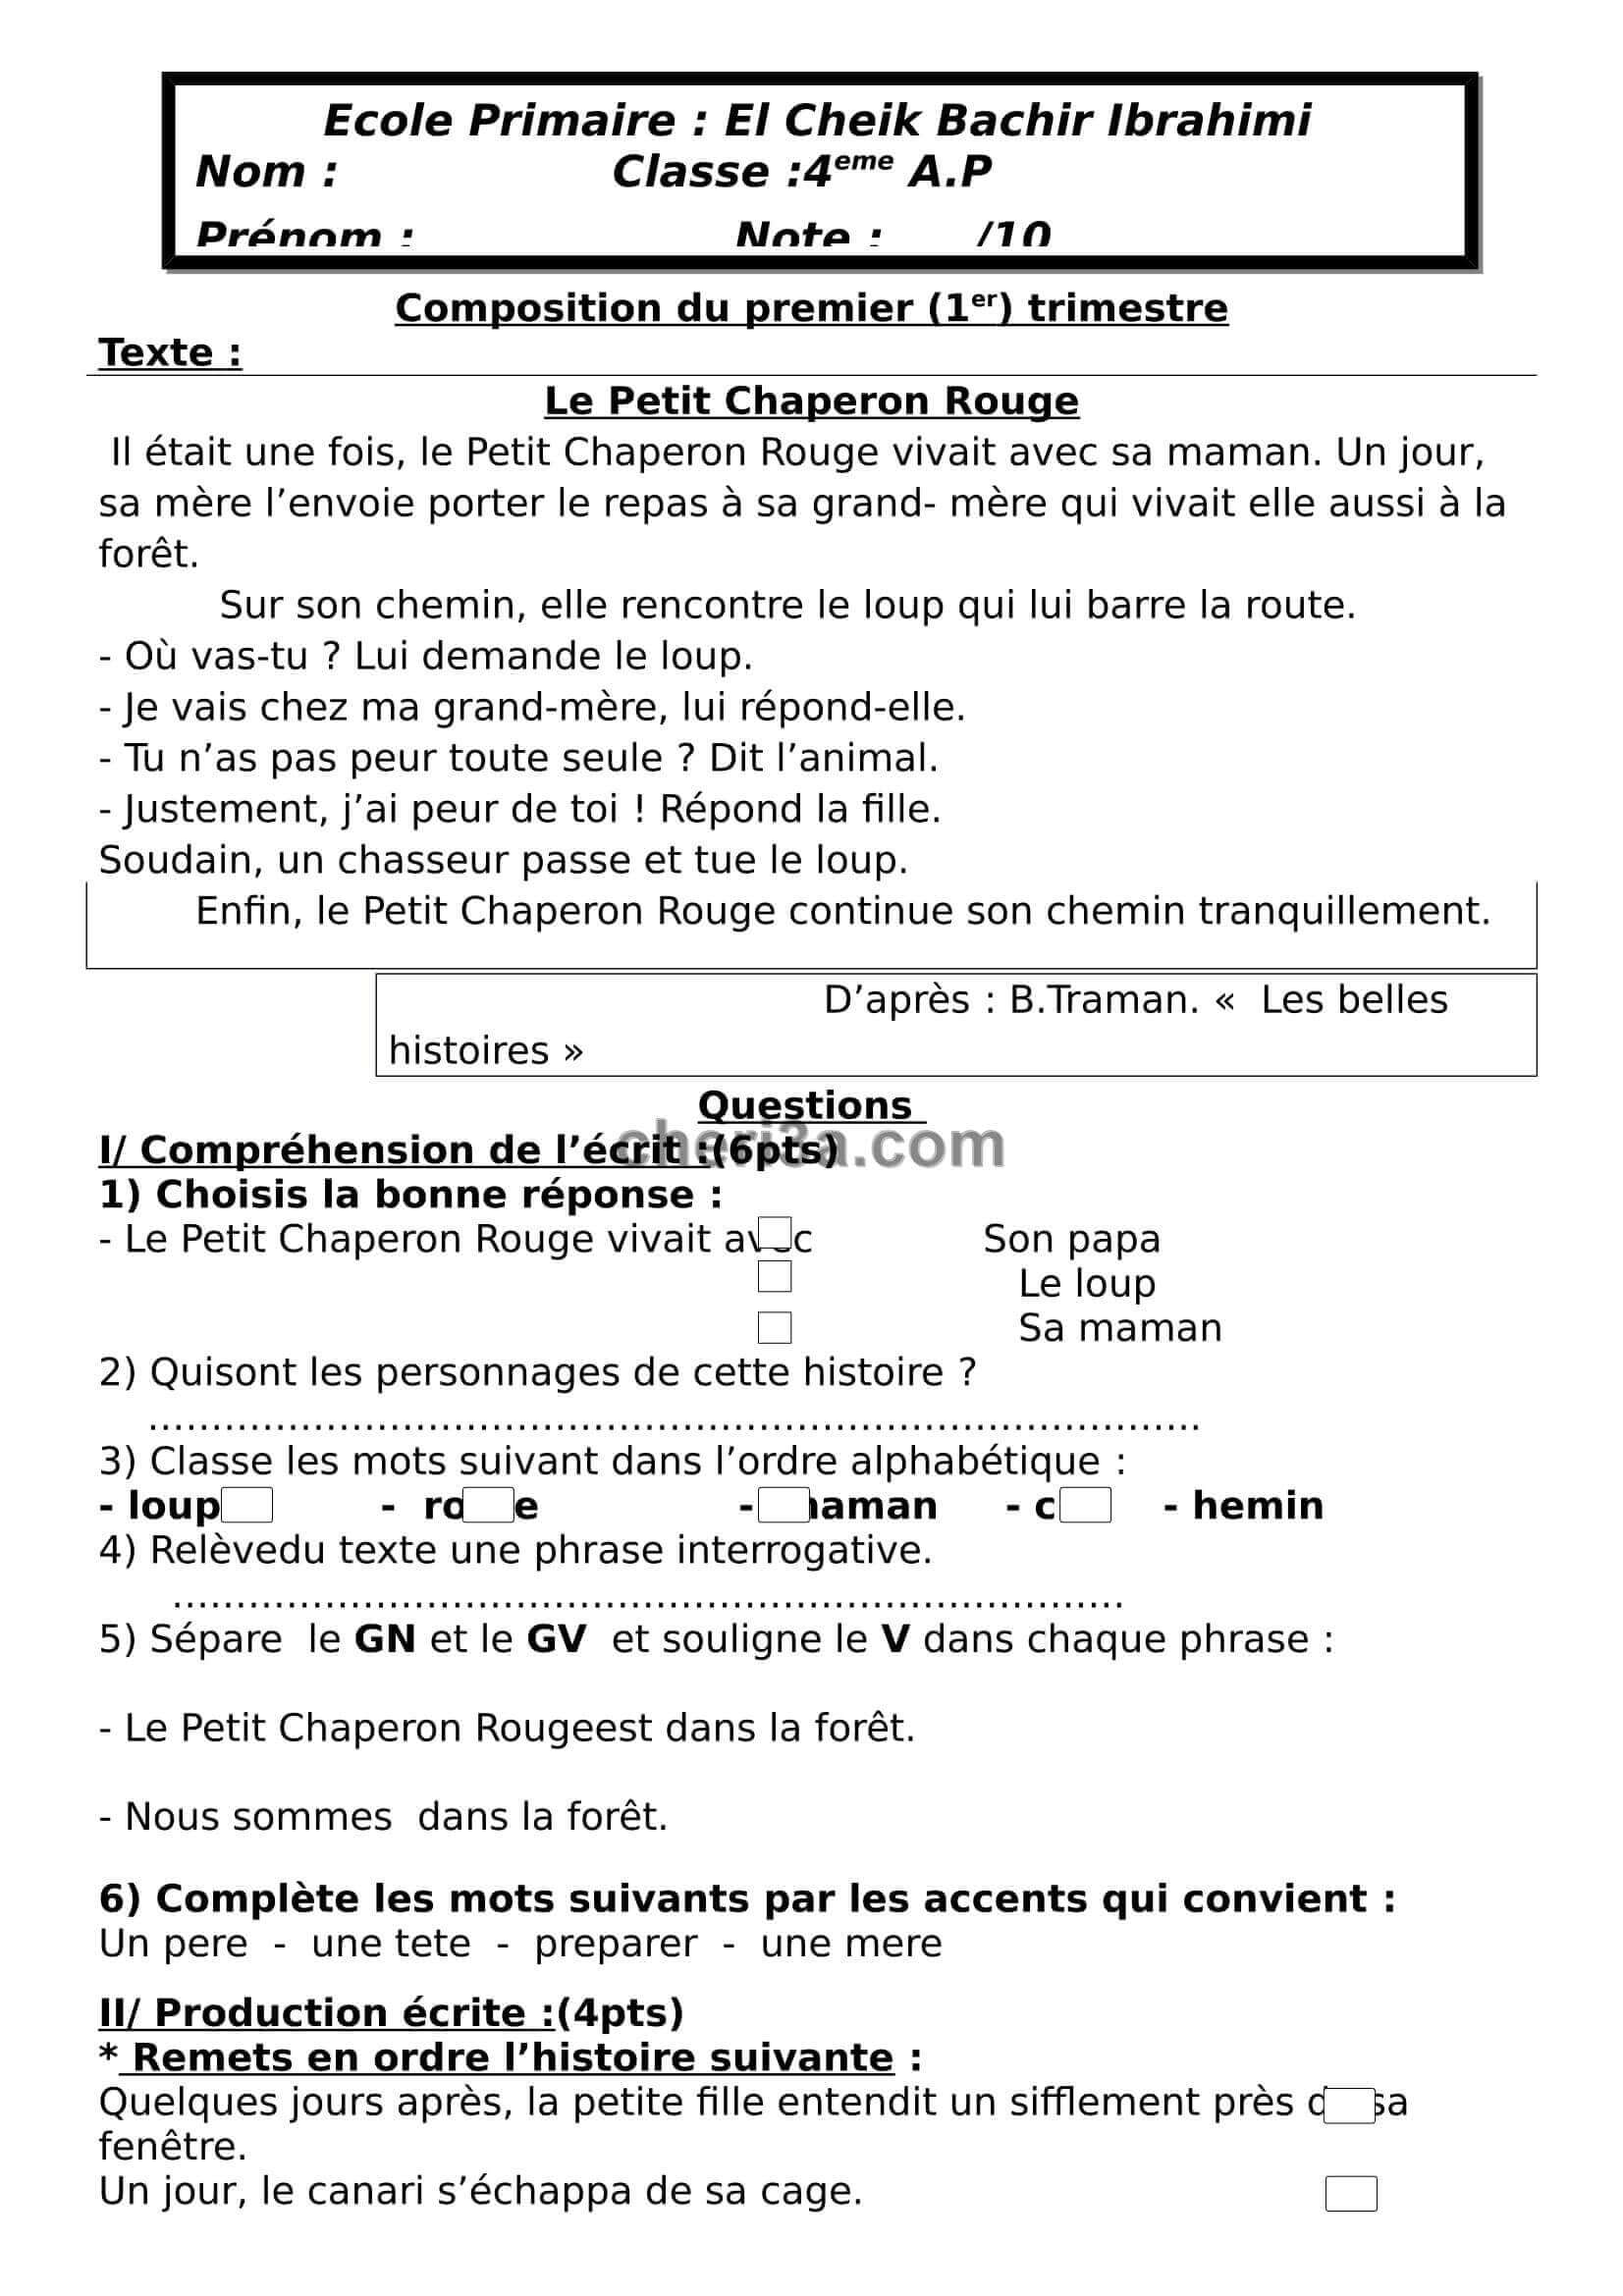 اختبار الفصل الاول للسنة الرابعة ابتدائي في الفرنسية النموذج 2